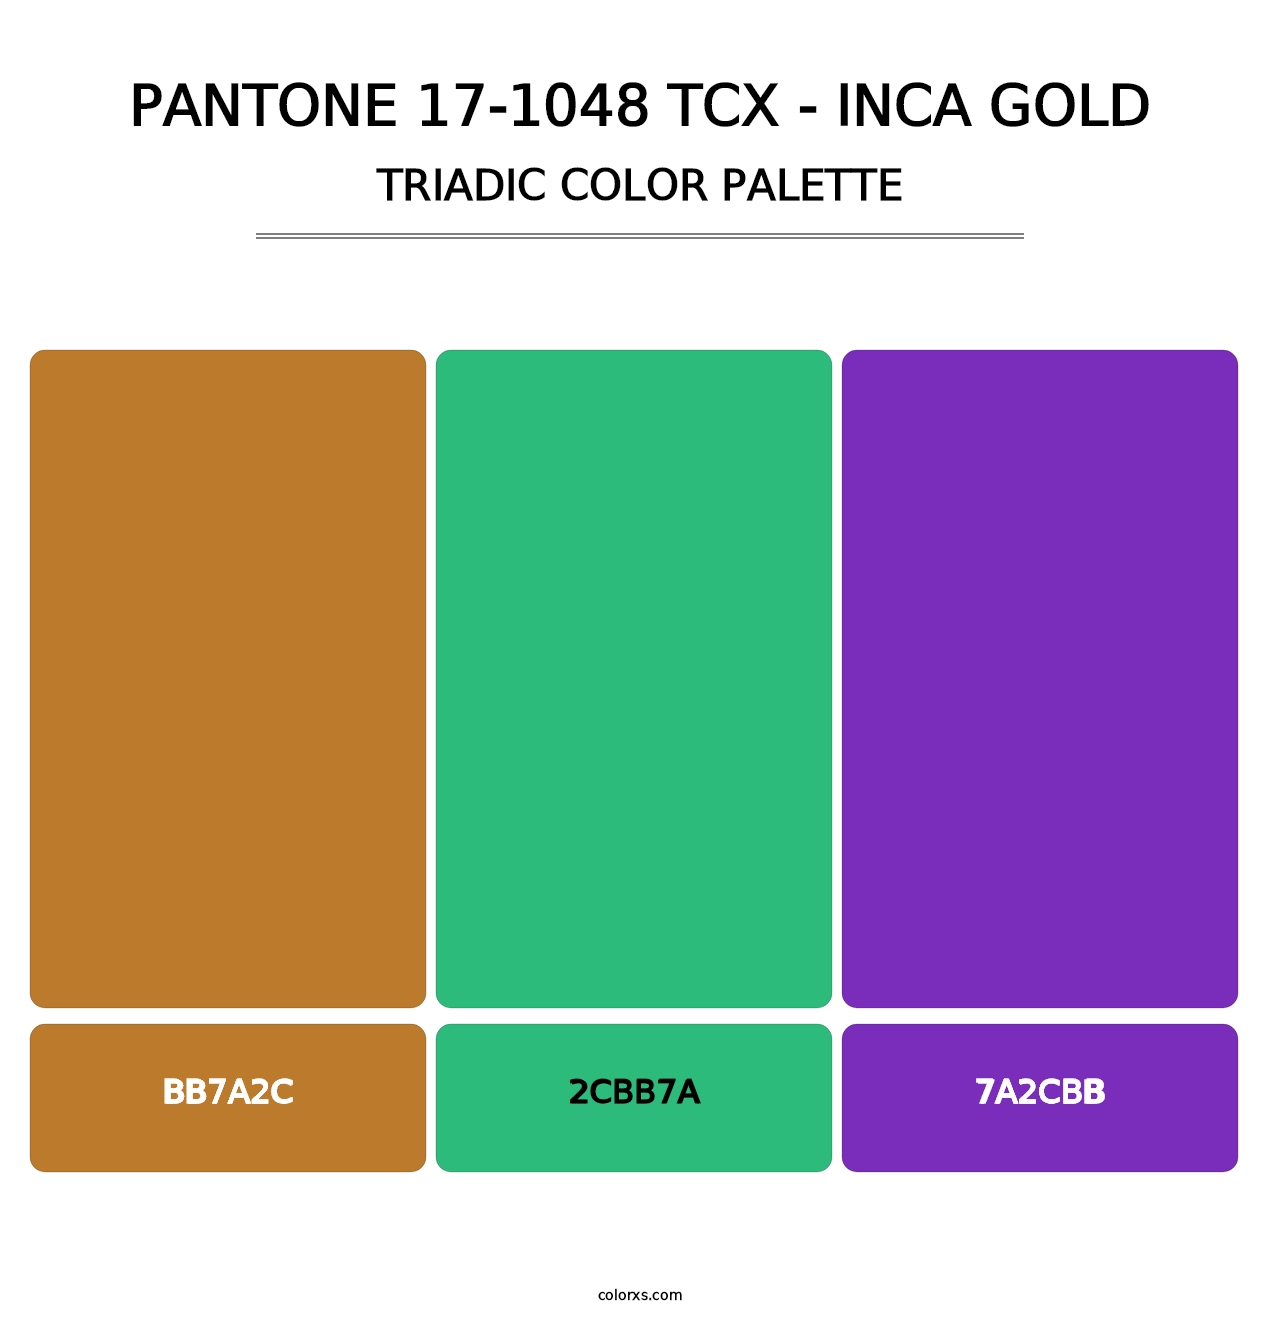 PANTONE 17-1048 TCX - Inca Gold - Triadic Color Palette